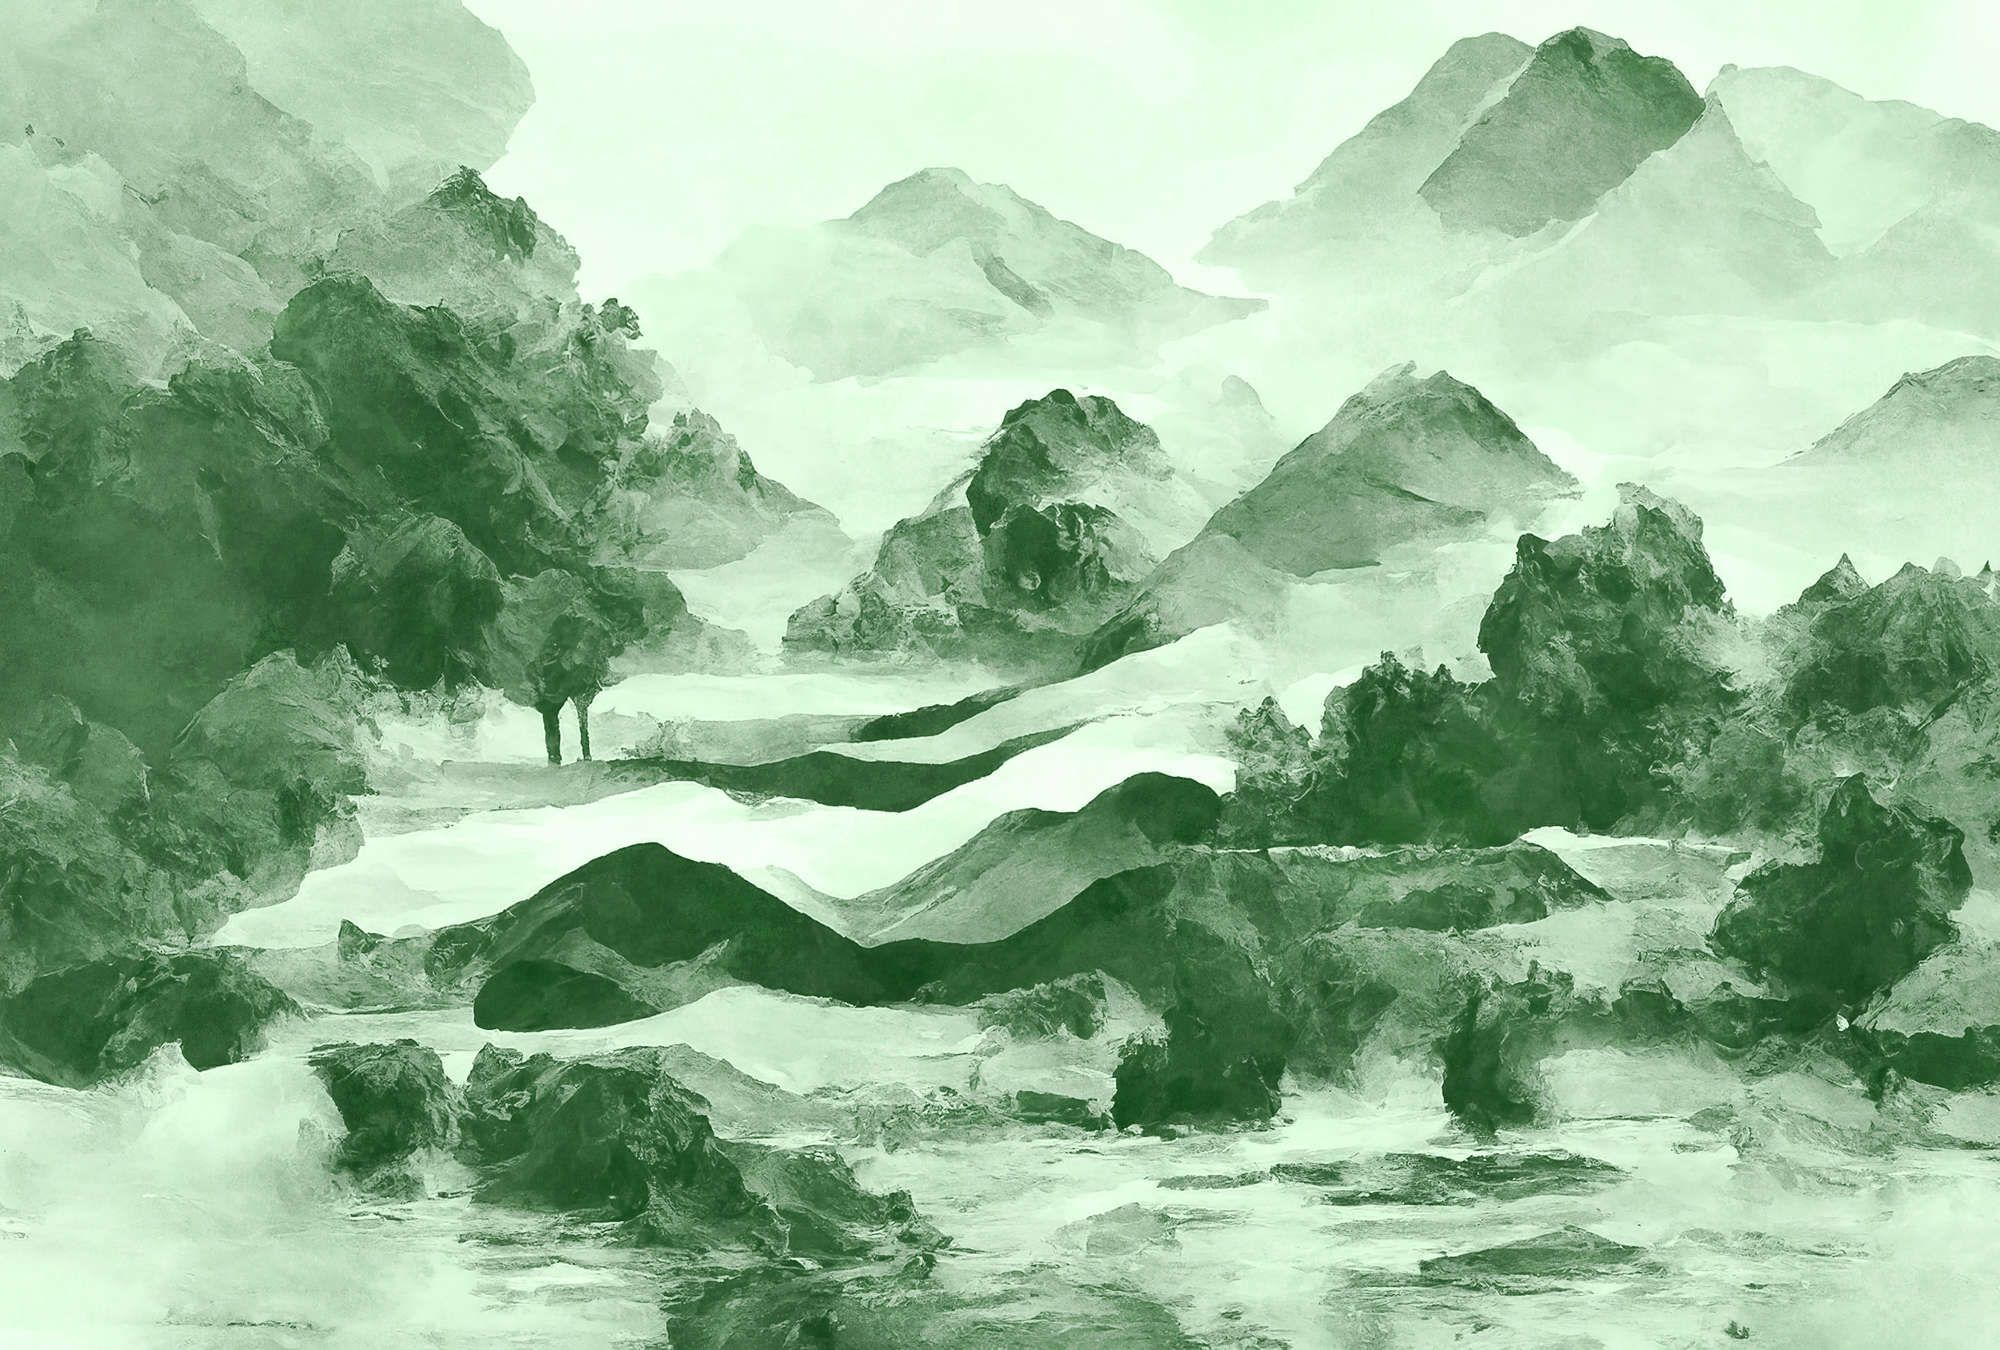             Digital behang »tinterra 2« - Landschap met bergen & mist - Groen | Mat, Glad vlies
        